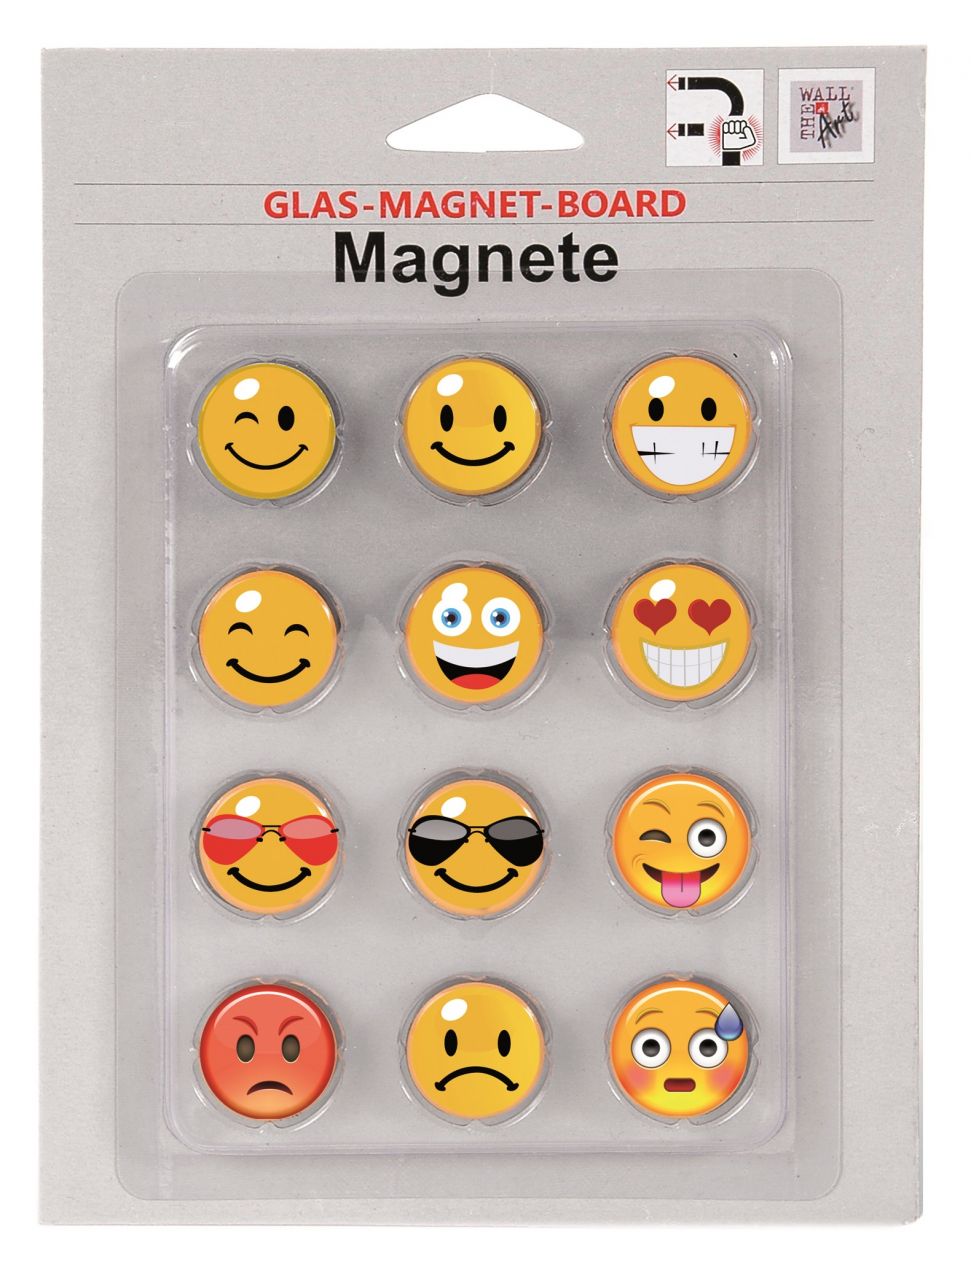 Magnetset 12-teilig - Smilie für Glas-Magnet-Board von The Wall